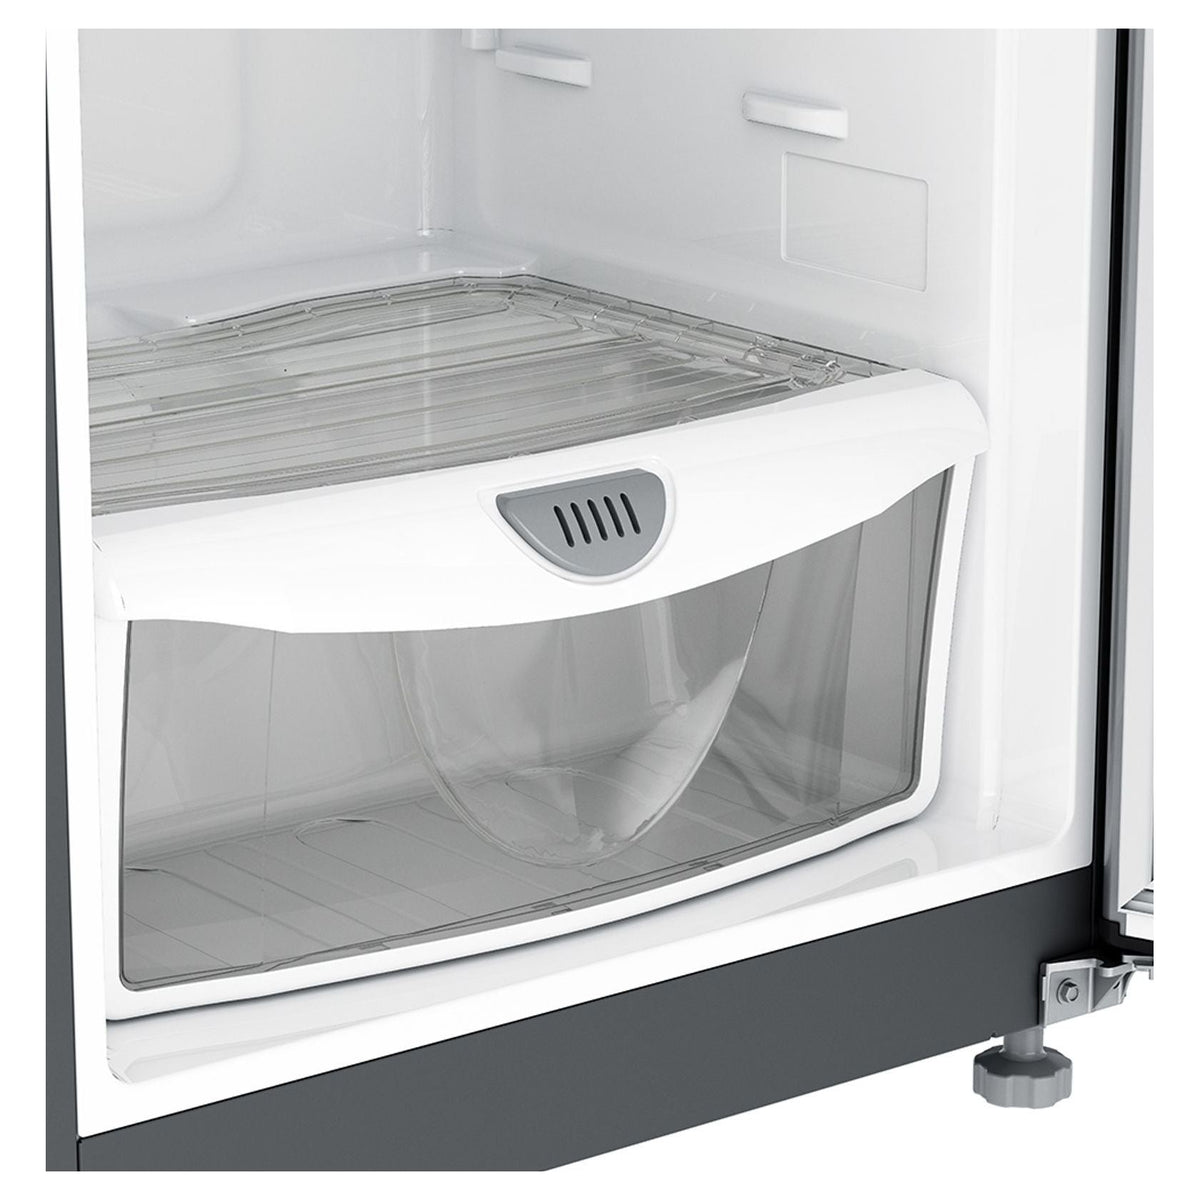 Refrigeradora Whirlpool WRW32CKTWW | 11 pies cúbicos | Top Mount | Dispensador | Acero Inoxidable - Multimax